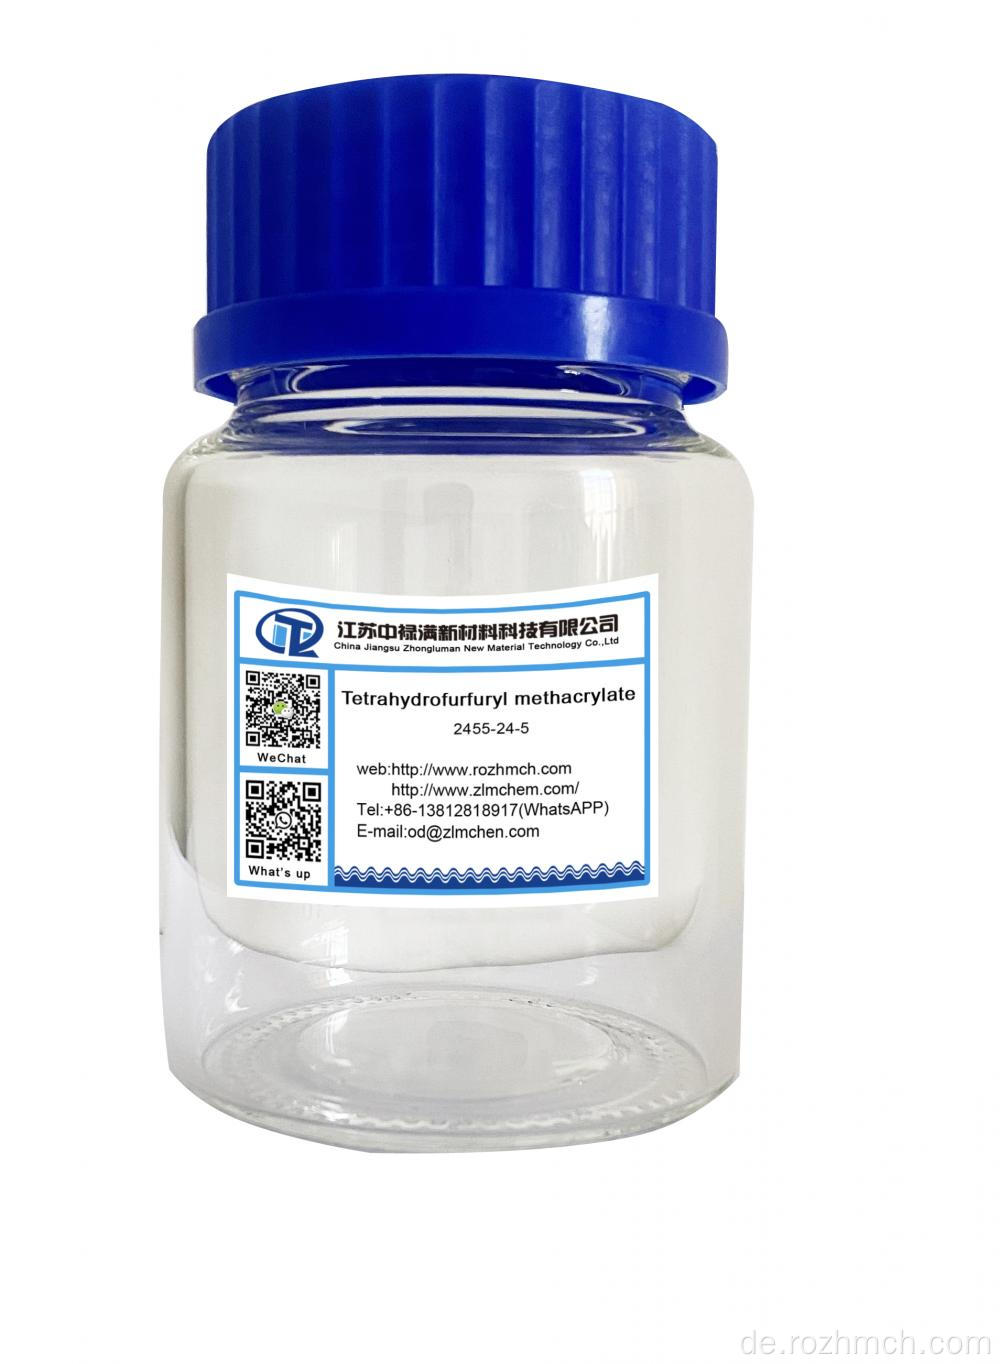 Tetrahydrofurfuryl Methacrylat thfma 2455-24-5